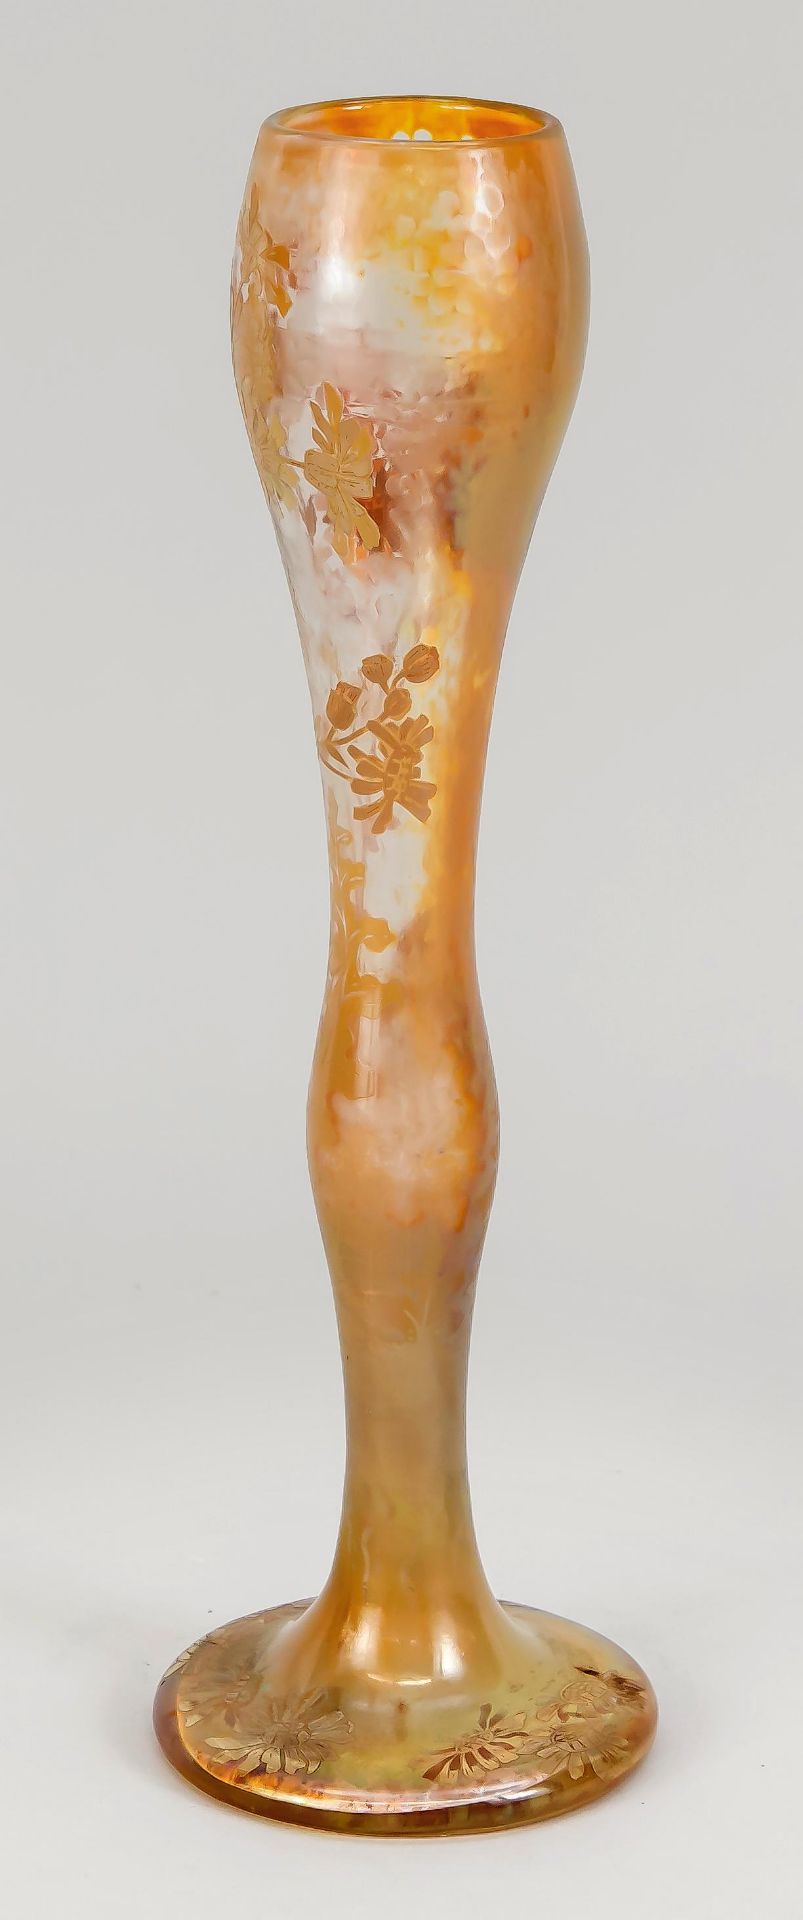 Jugendstil-Vase, Frankreich um 1900, Désiré Christian, Meisenthal, Lothringen, EntwurfArmand - Bild 2 aus 2